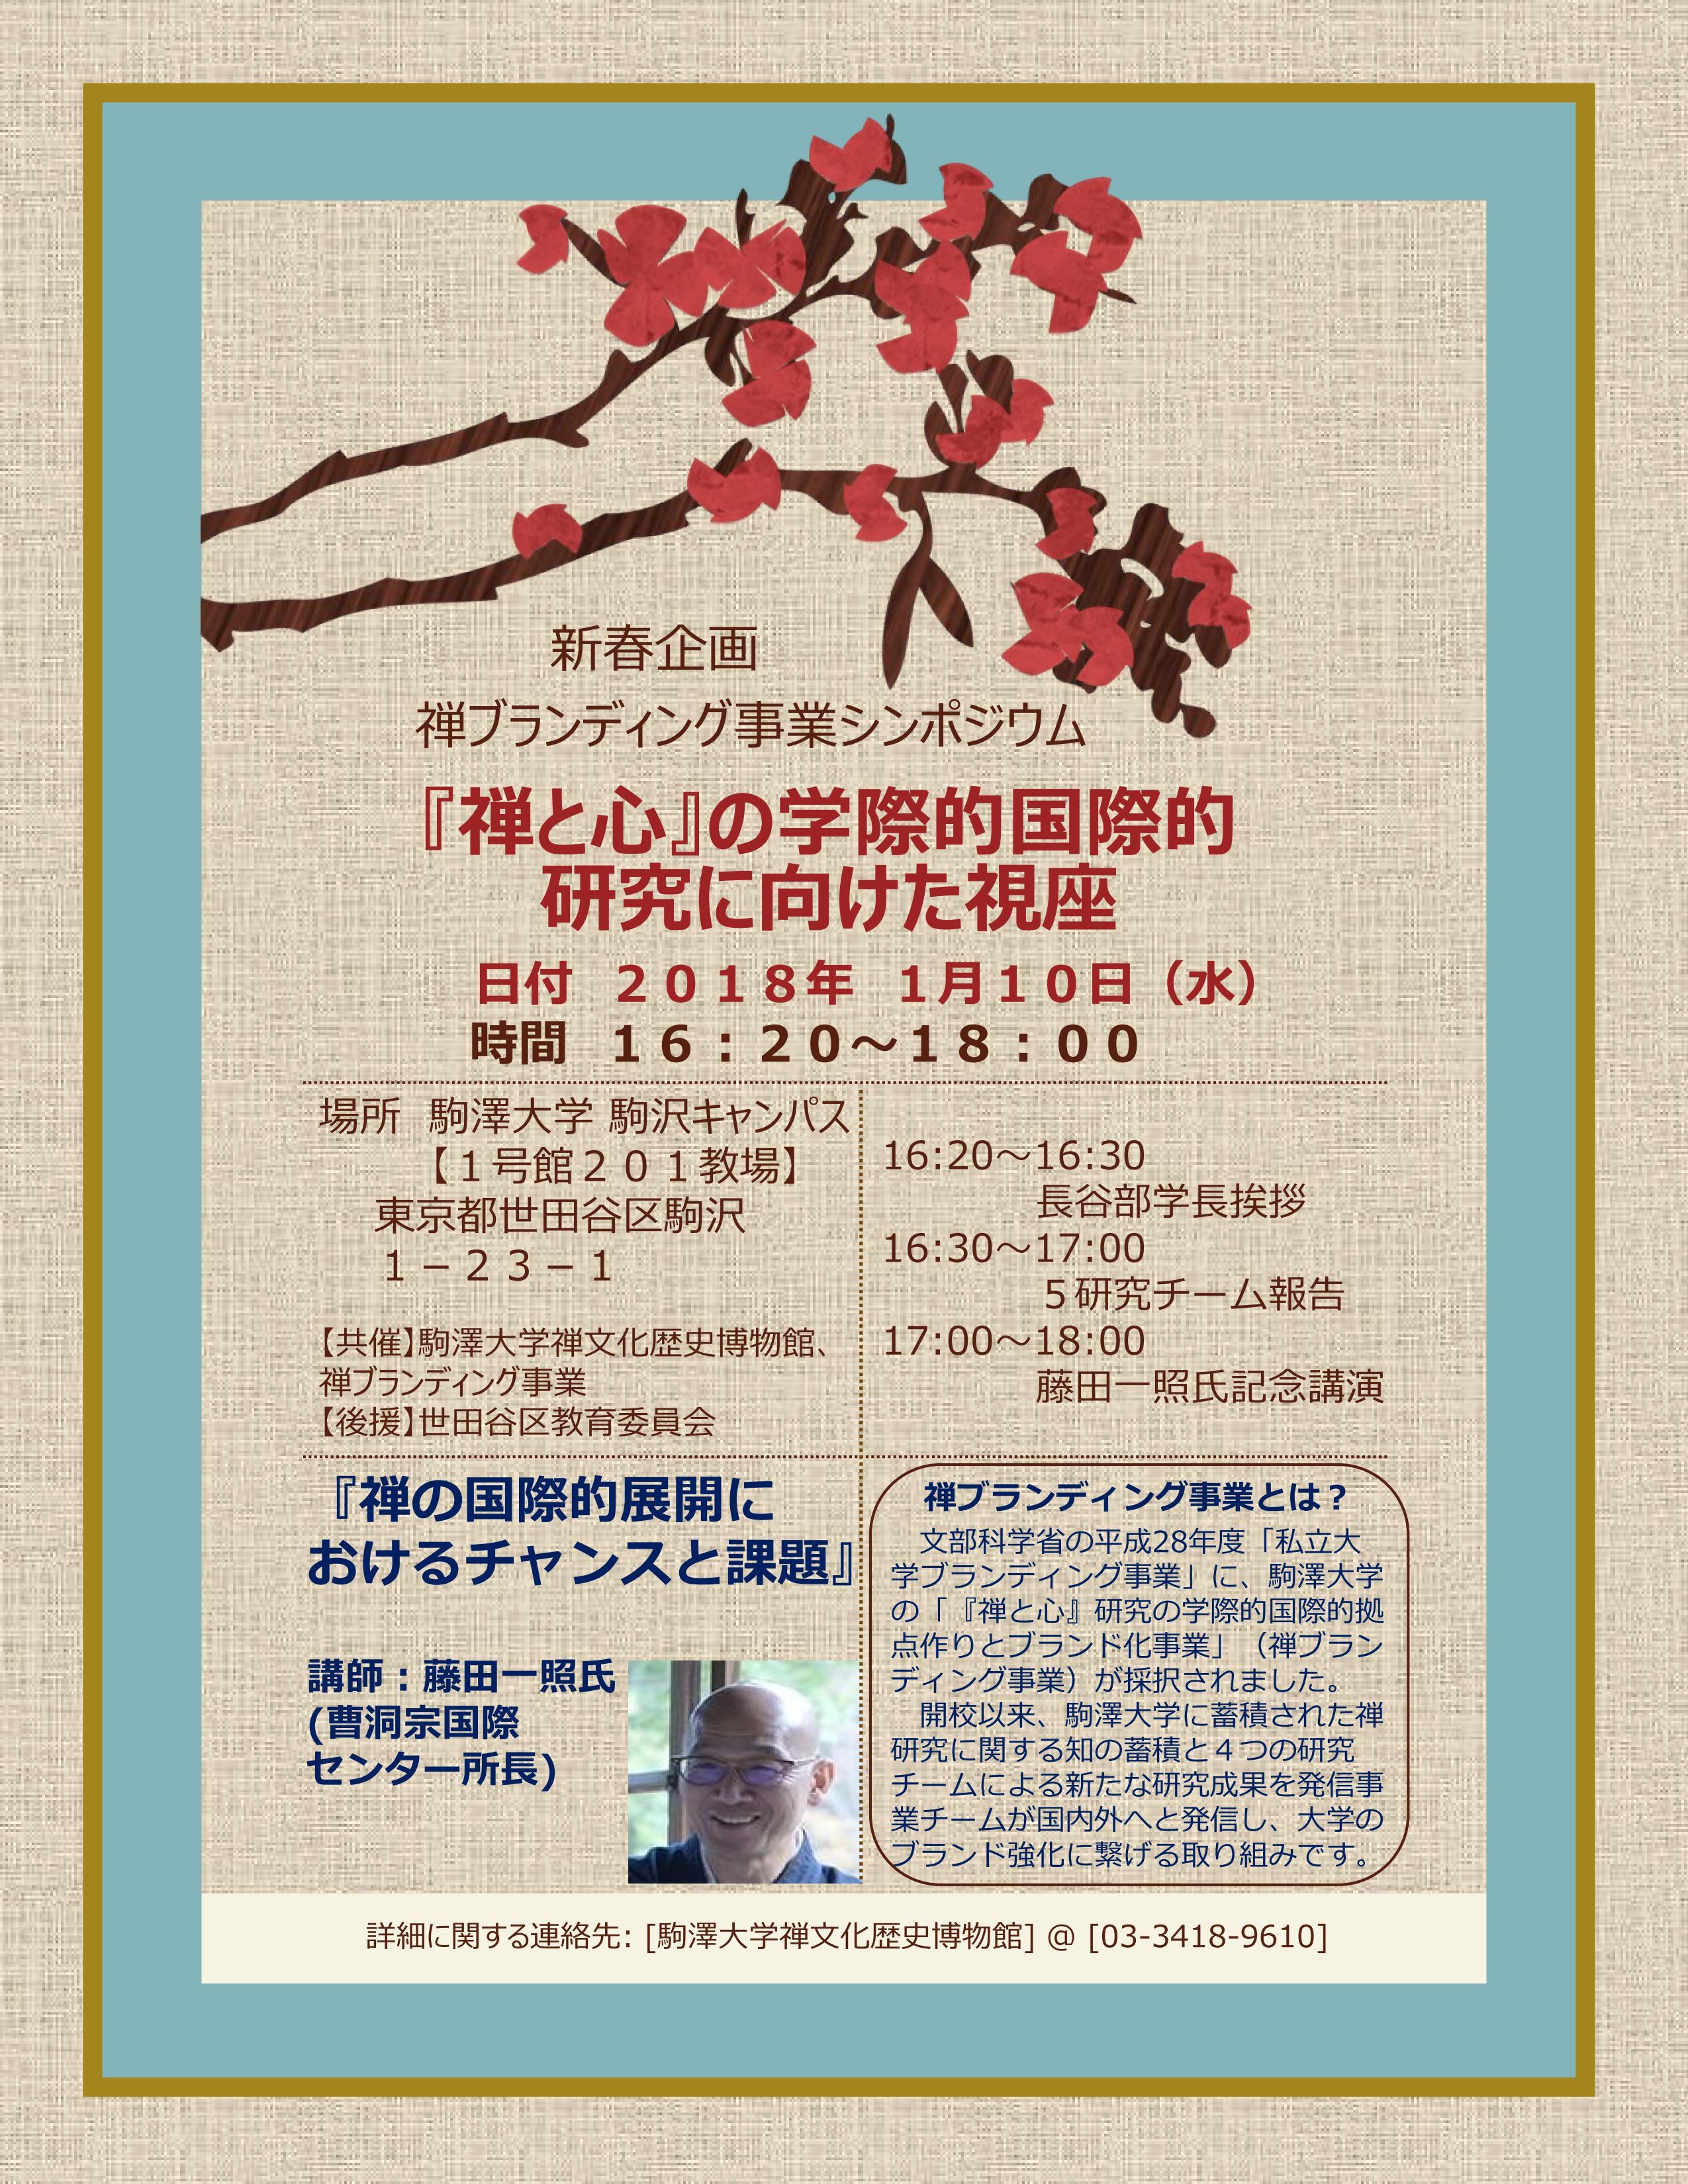 駒澤大学が2018年1月10日に禅ブランディング事業シンポジウムを開催 -- 『禅と心』の学際的国際的研究に向けた視座